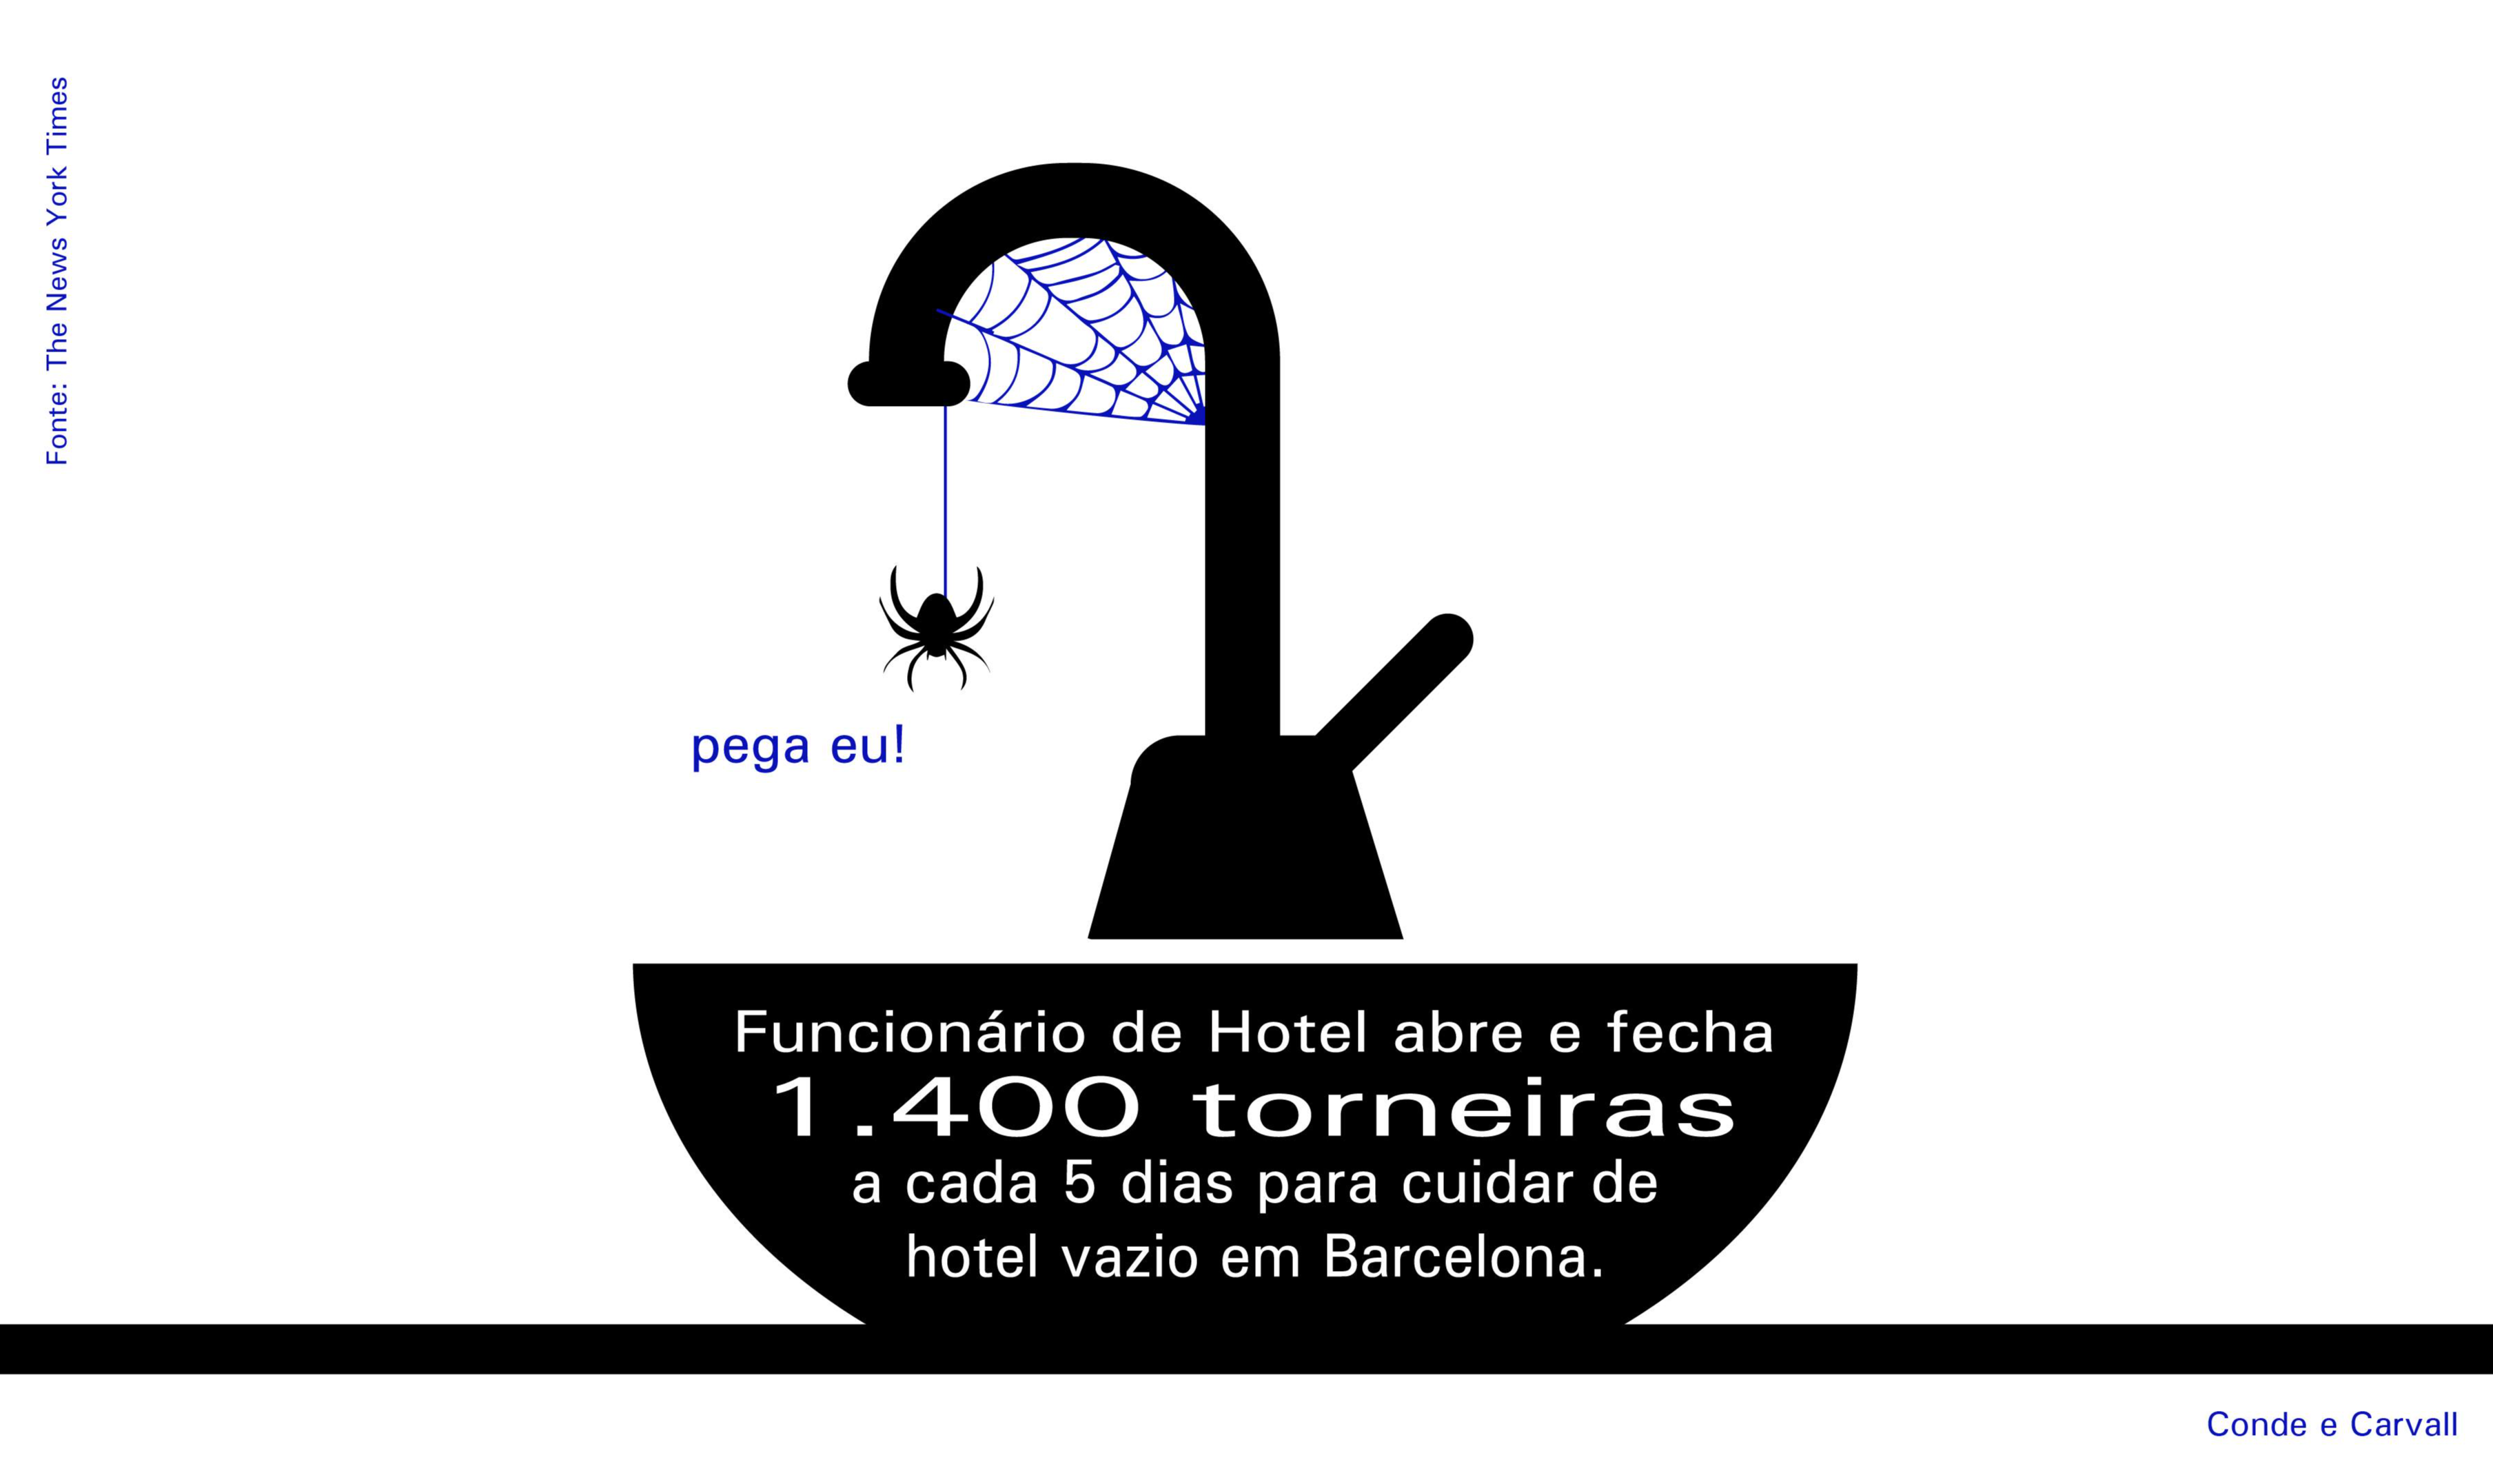 Segundo jornal New York Times, funcionário de hotel em Barcelona abre e fecha 1.400 torneiras a cada cinco dias para ajudar na manutenção do estabelecimento